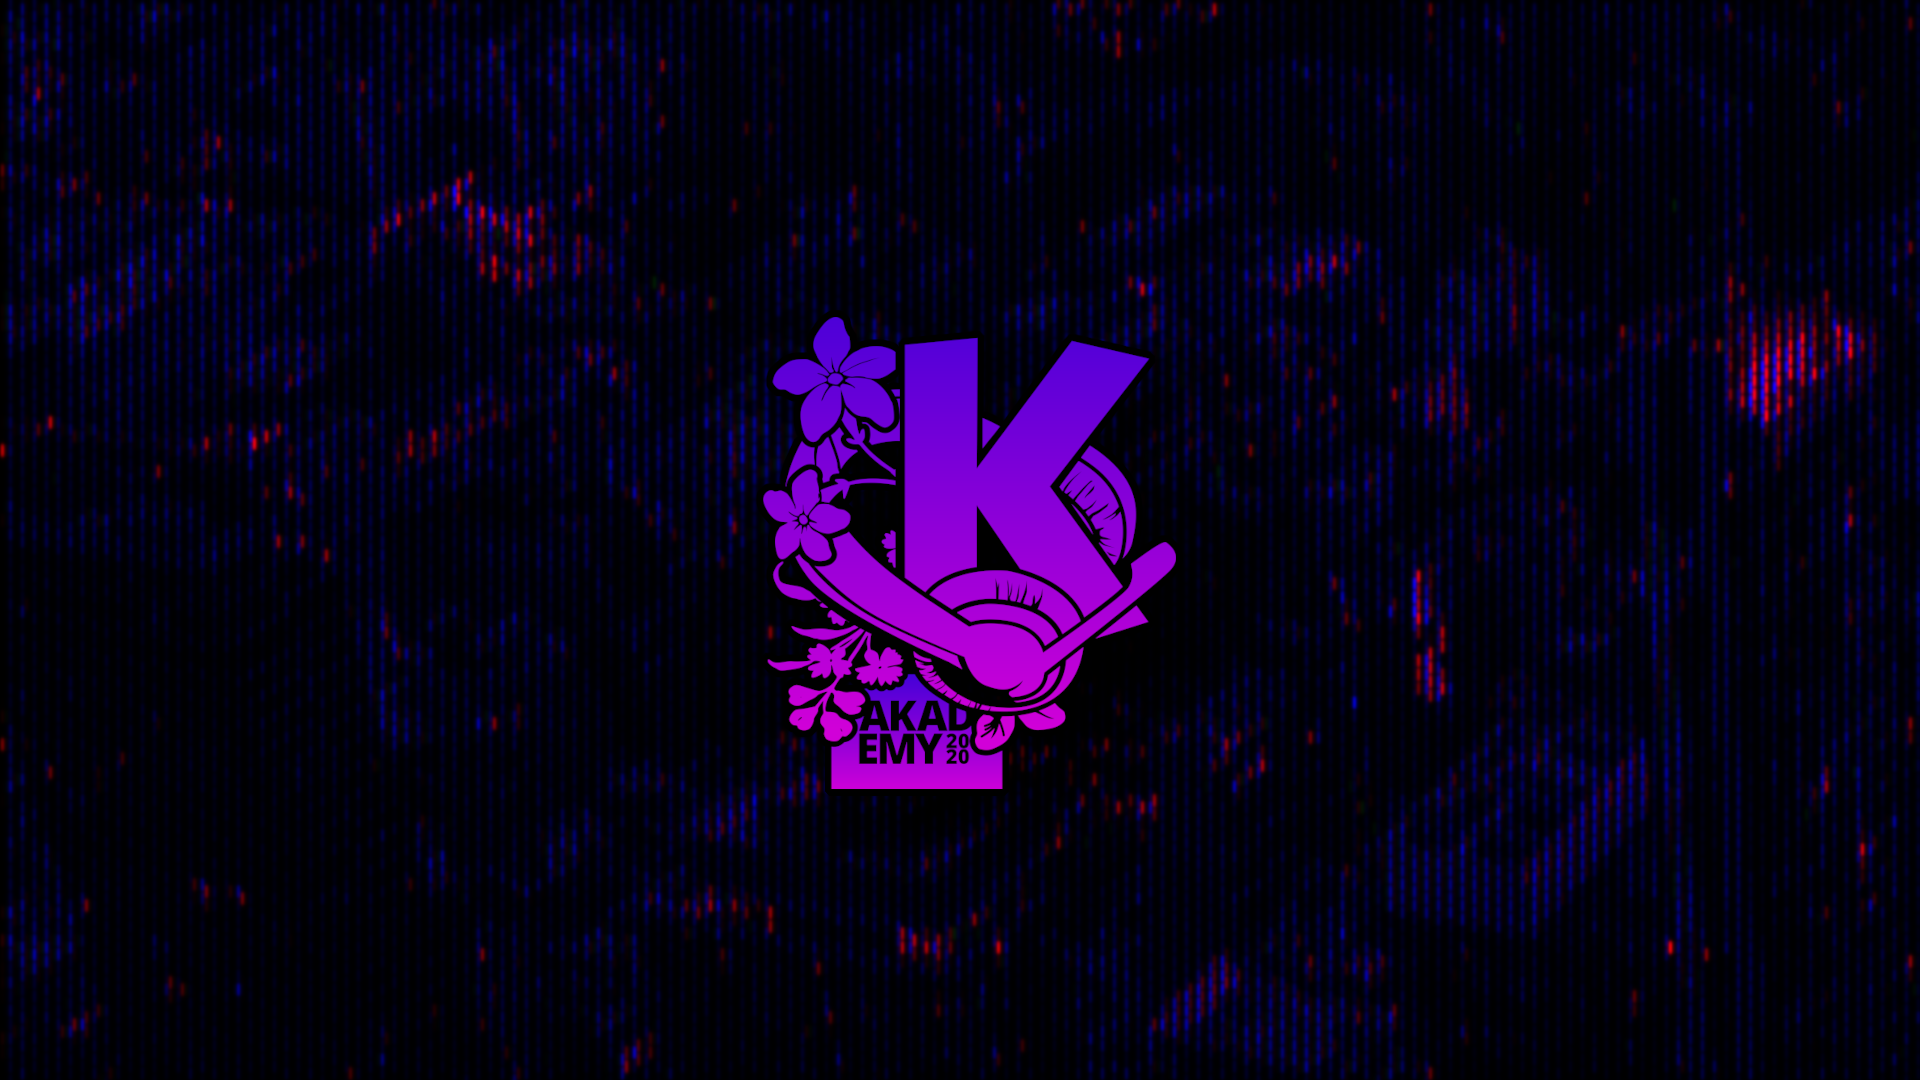 Desktop background with Akademy 2020 logo